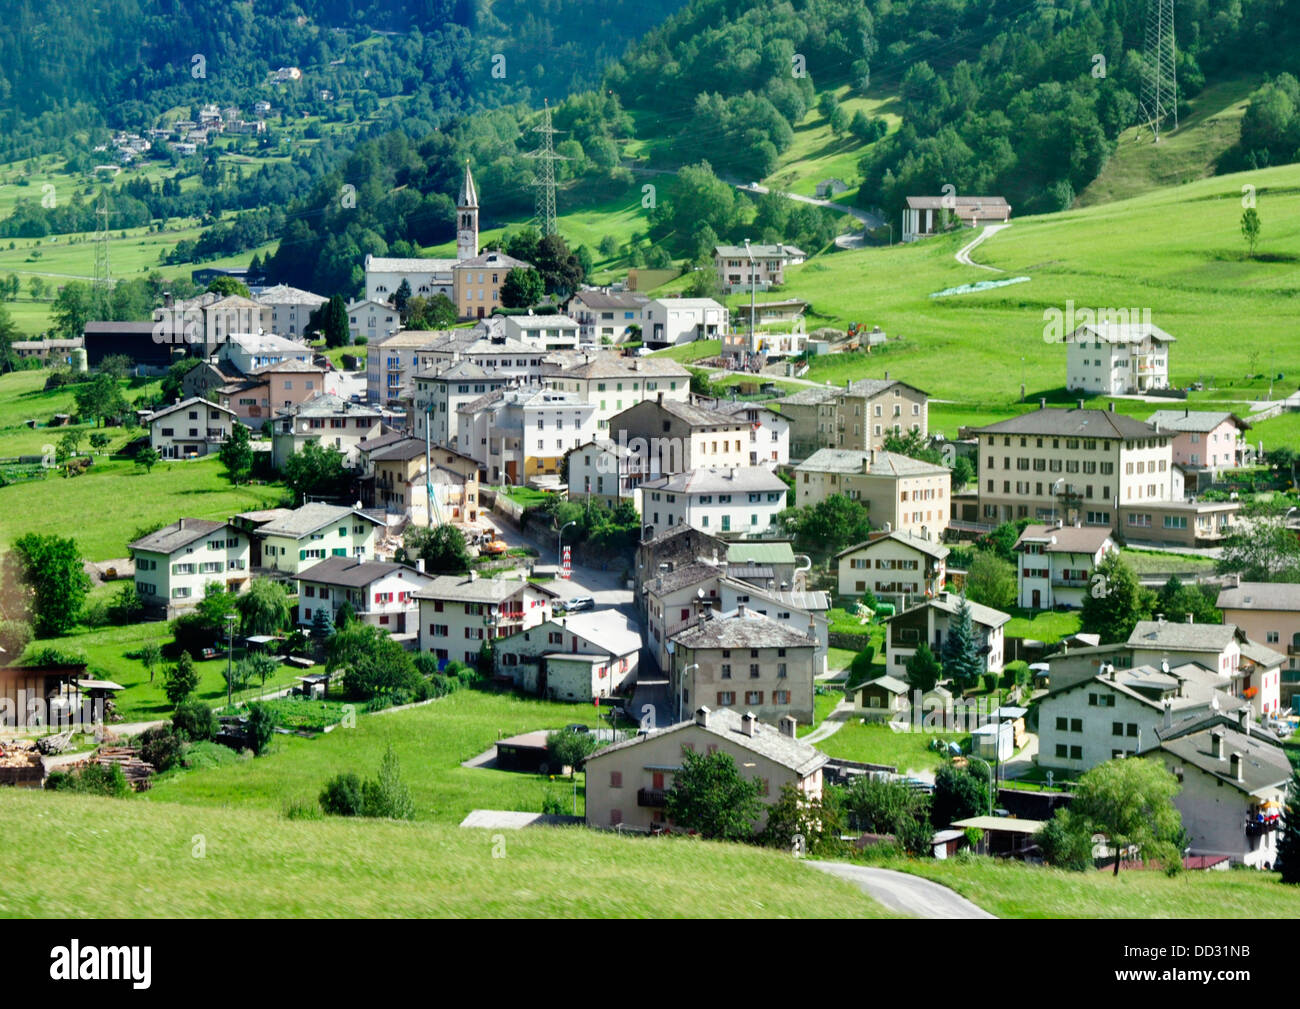 Svizzera - Poschiavo - villaggio alpino - visto dal Treno Bernina Express - Tirano a St Moritz linea - estate la luce del sole Foto Stock